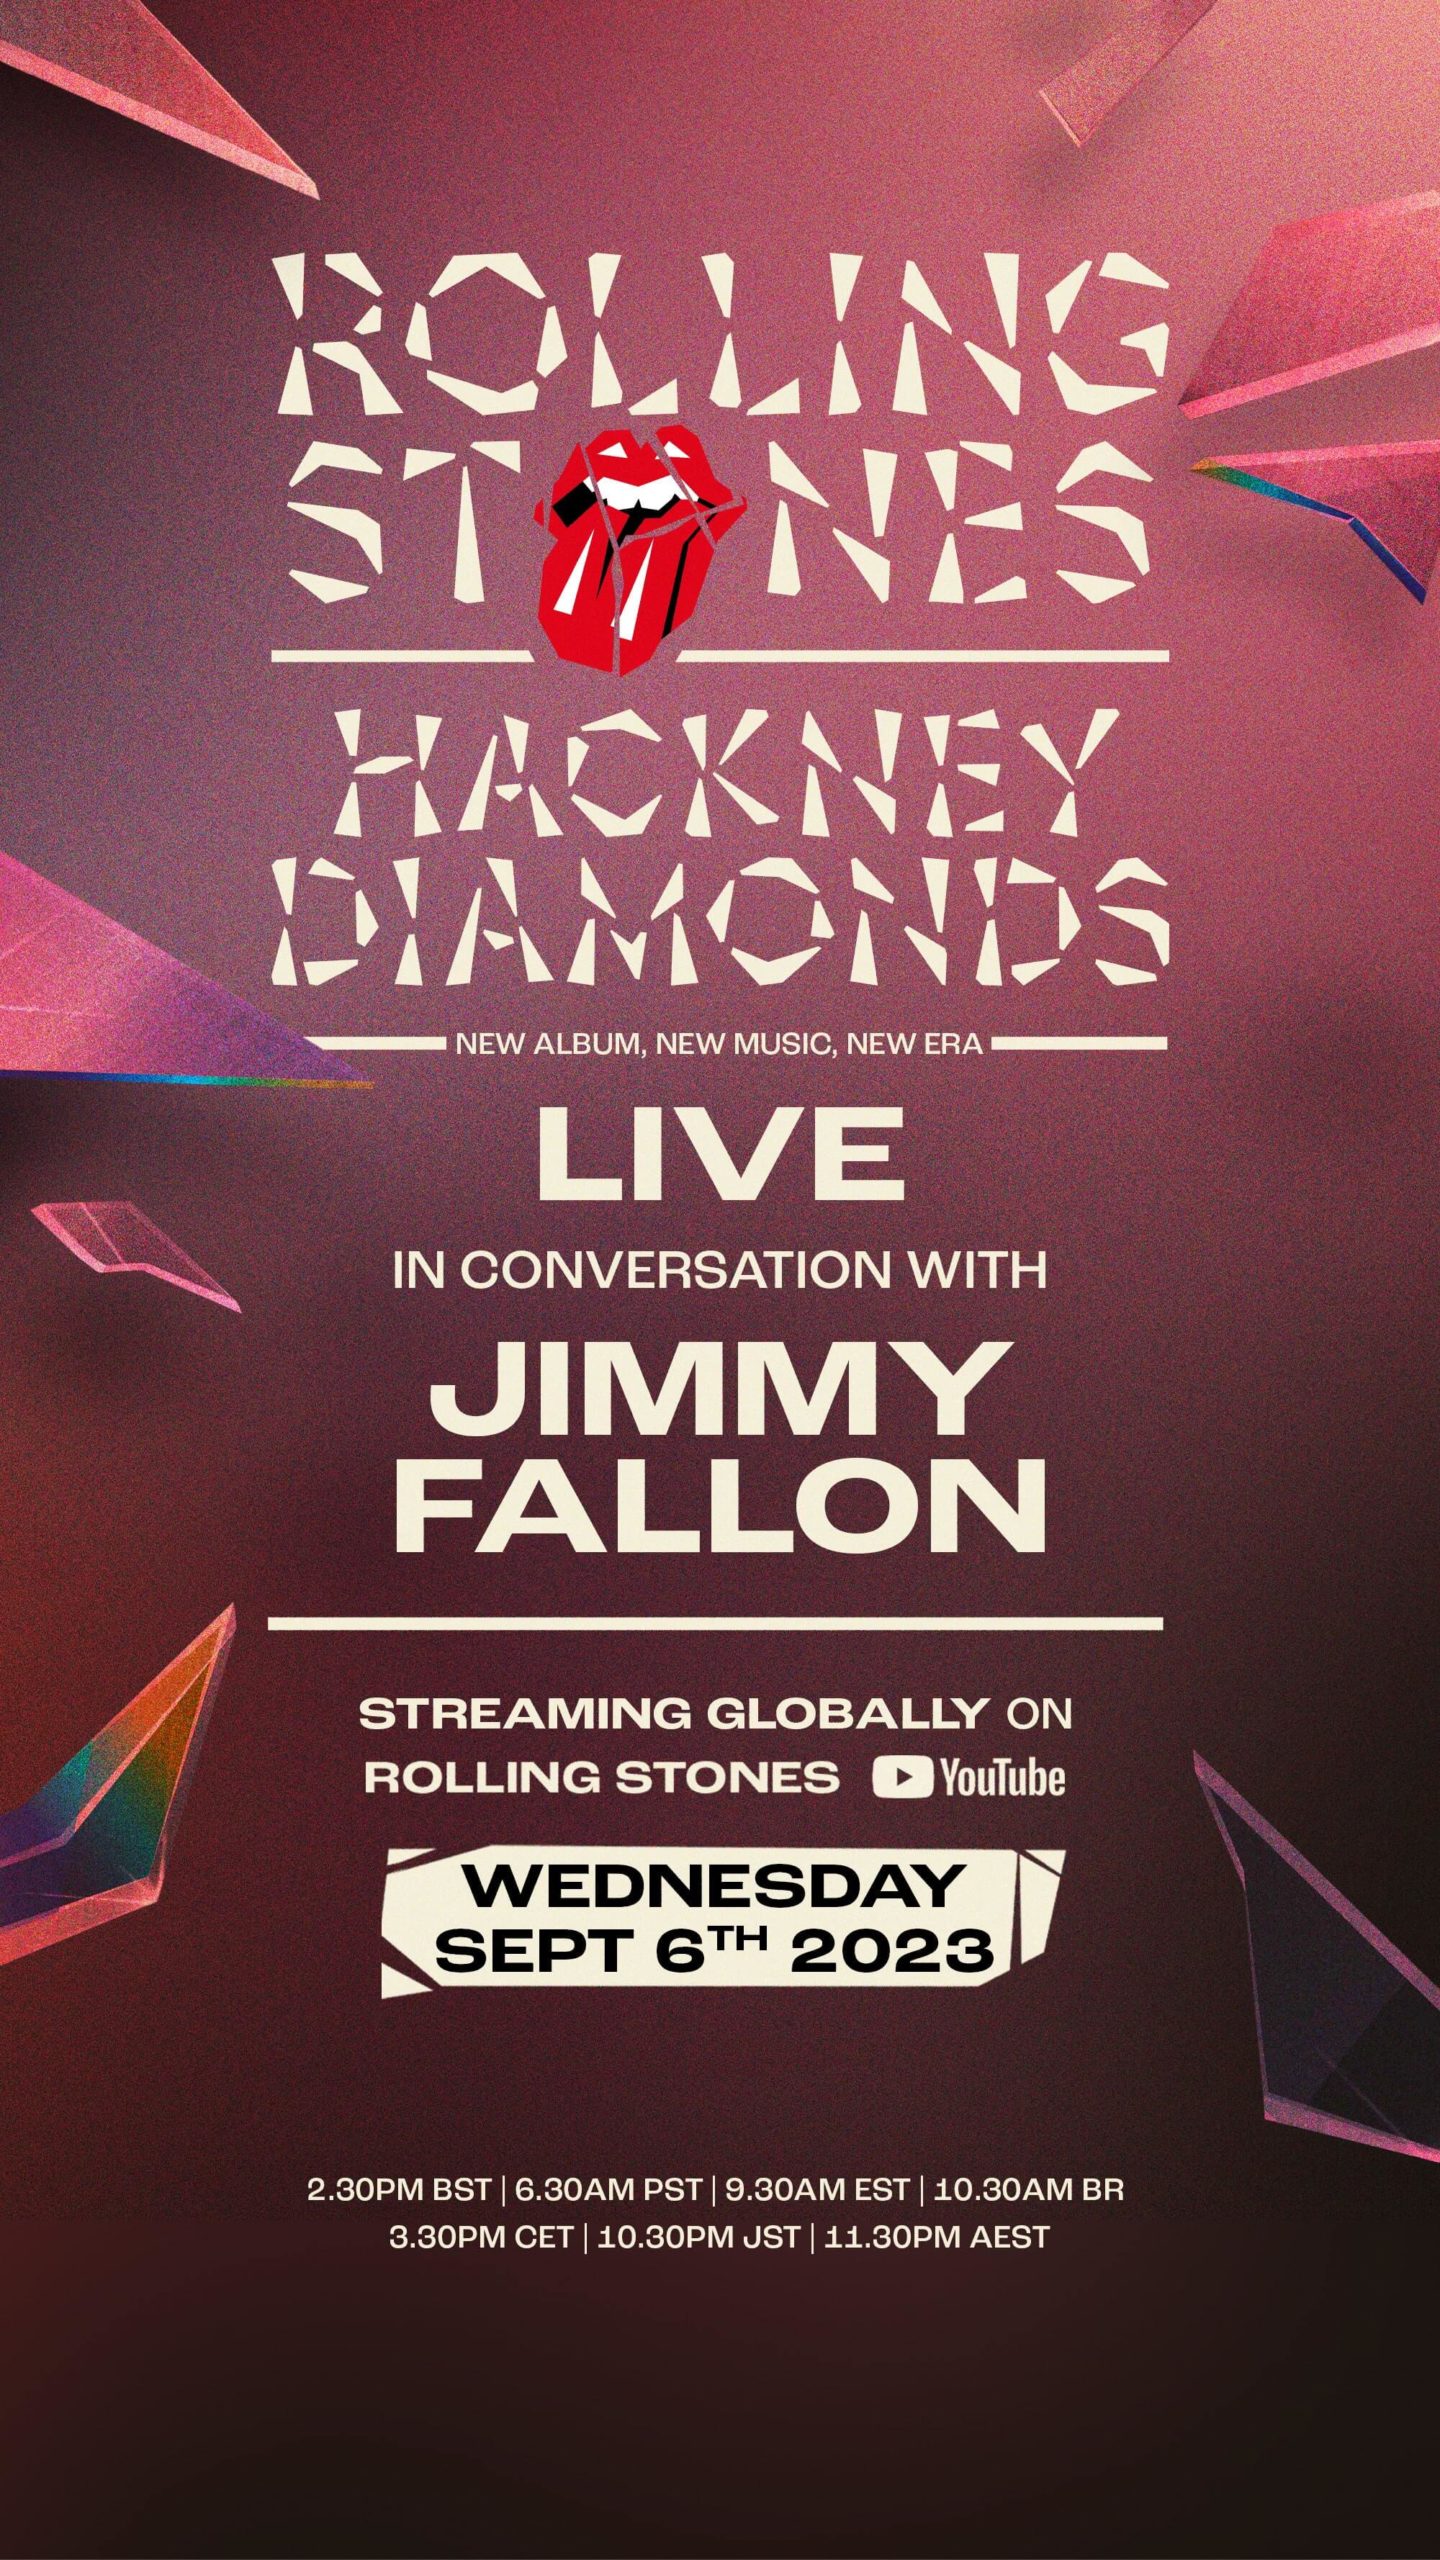 Rolling Stones Announce New Album, 'Hackney Diamonds